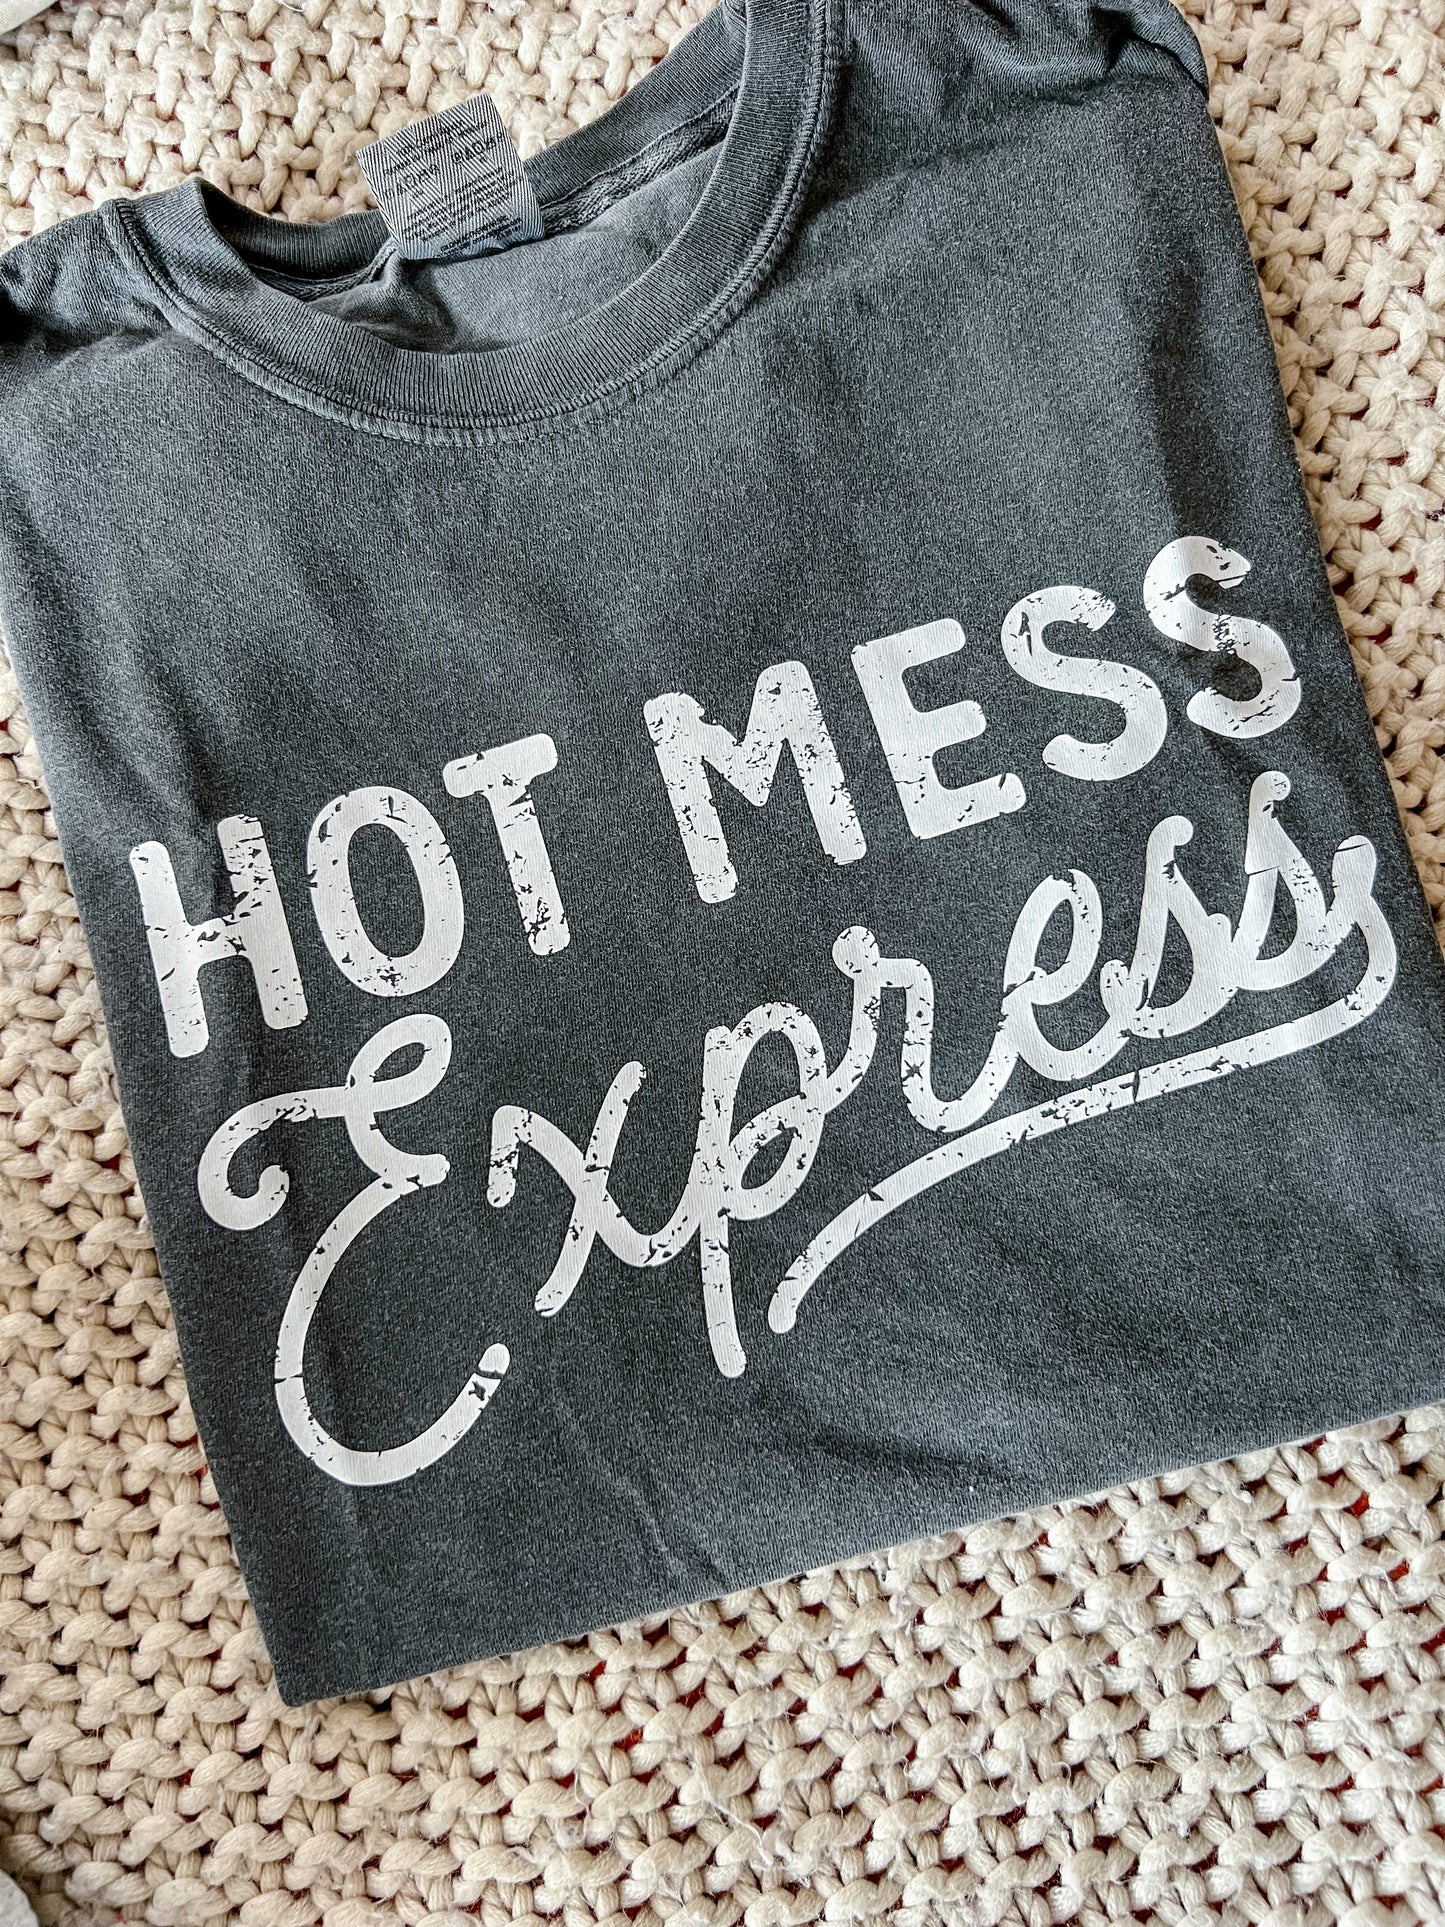 Hot Mess Express Tshirt